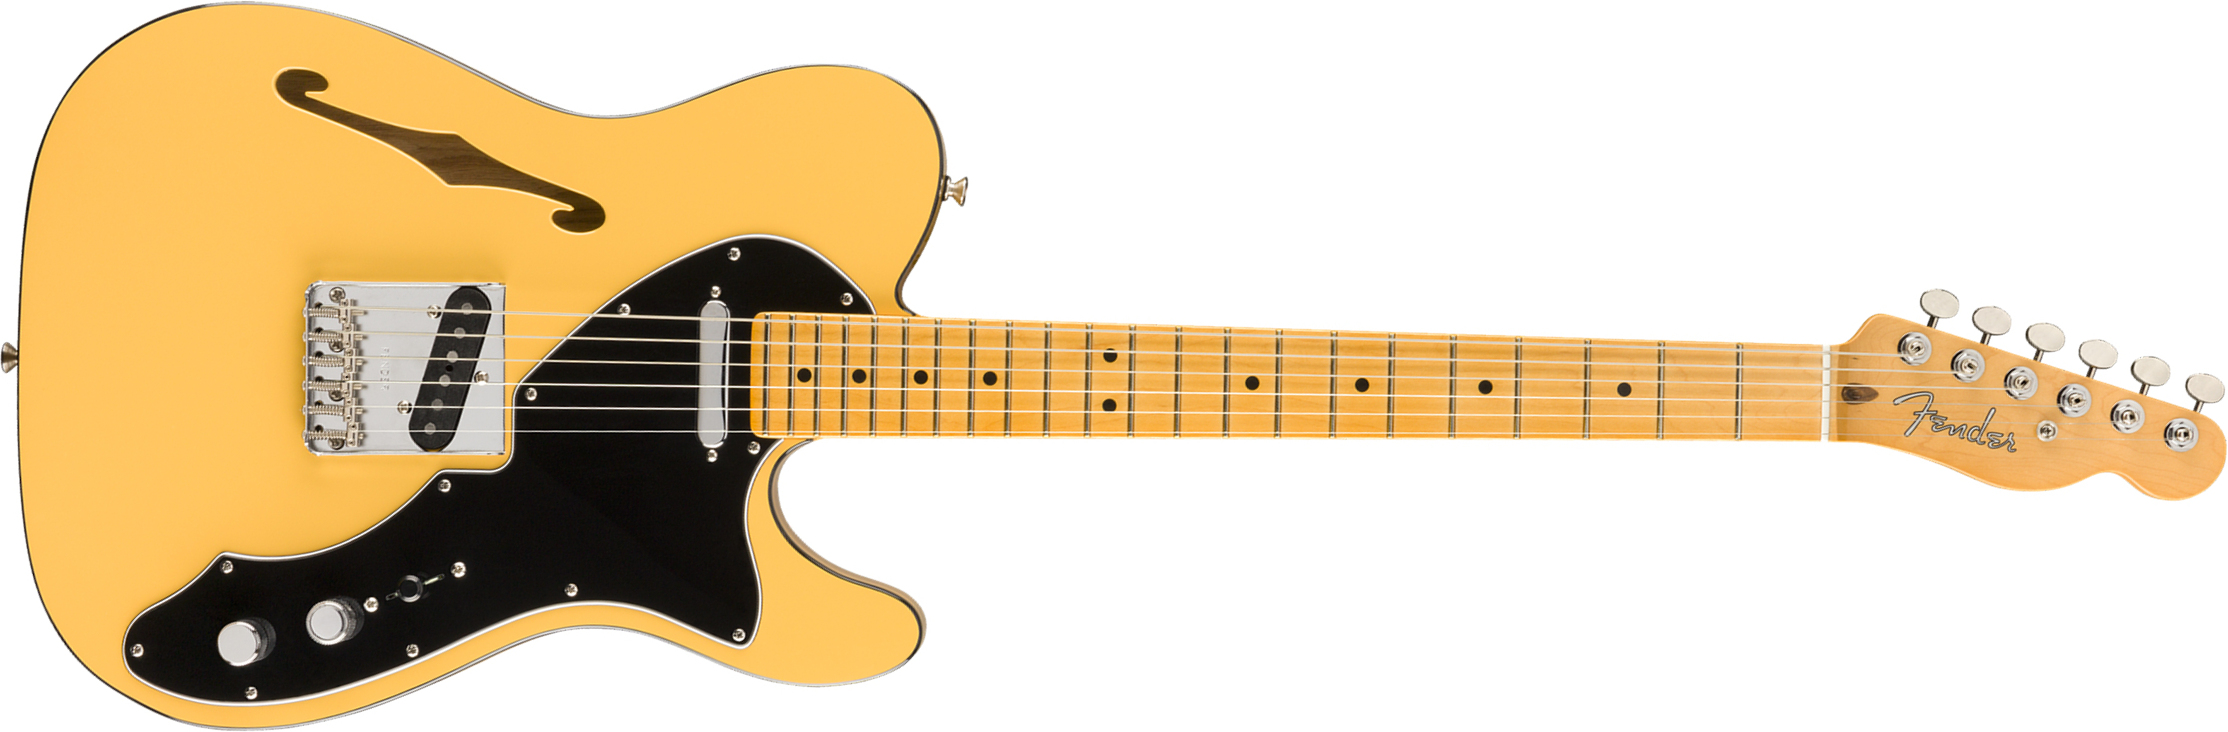 Fender Britt Daniel Tele Thinline Signature Ss Mn - Amarillo Gold - Guitarra eléctrica semi caja - Main picture